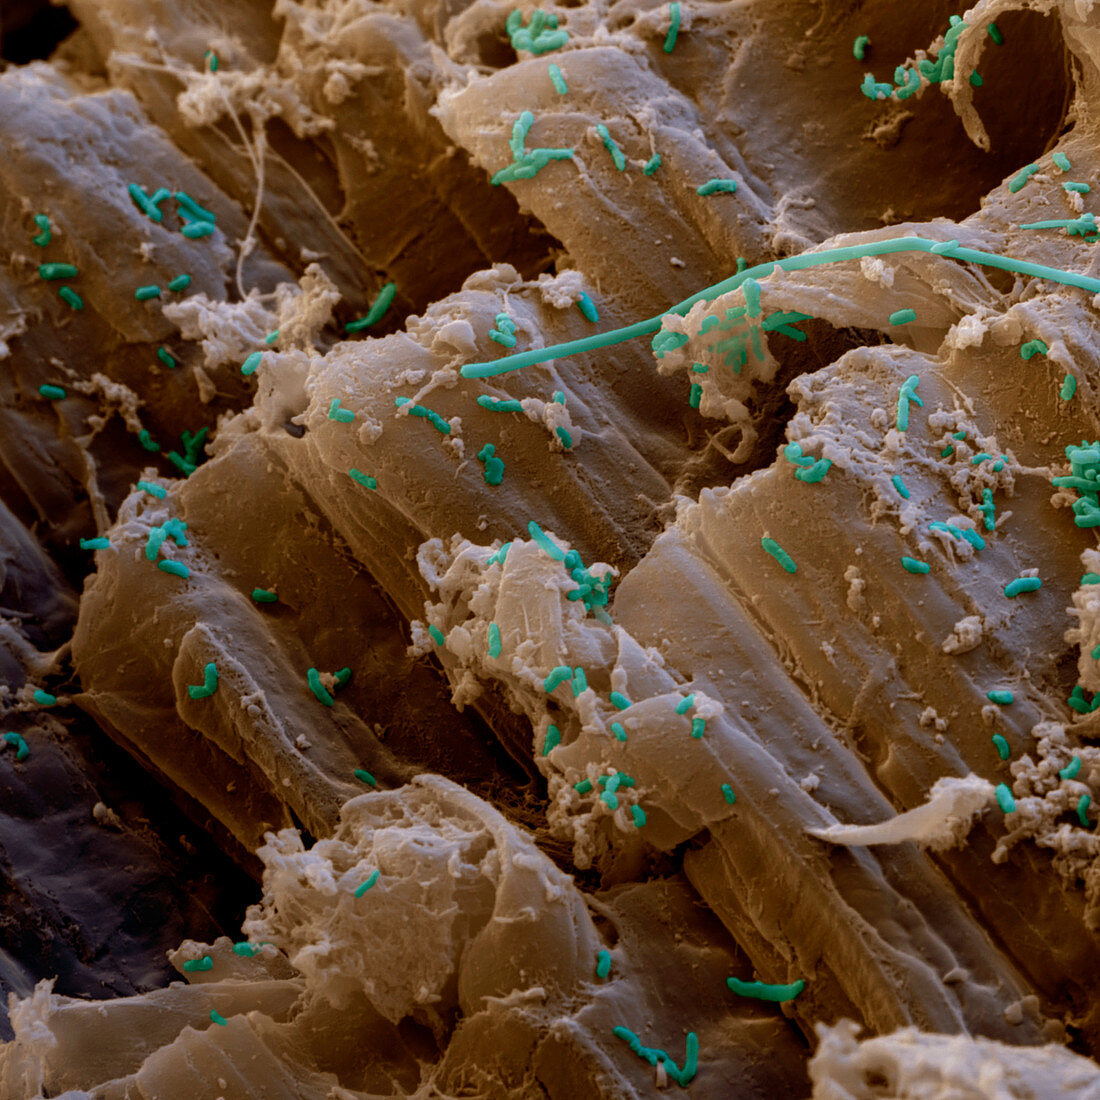 Essigbakterien 2800x - Essigsäure-Bakterien